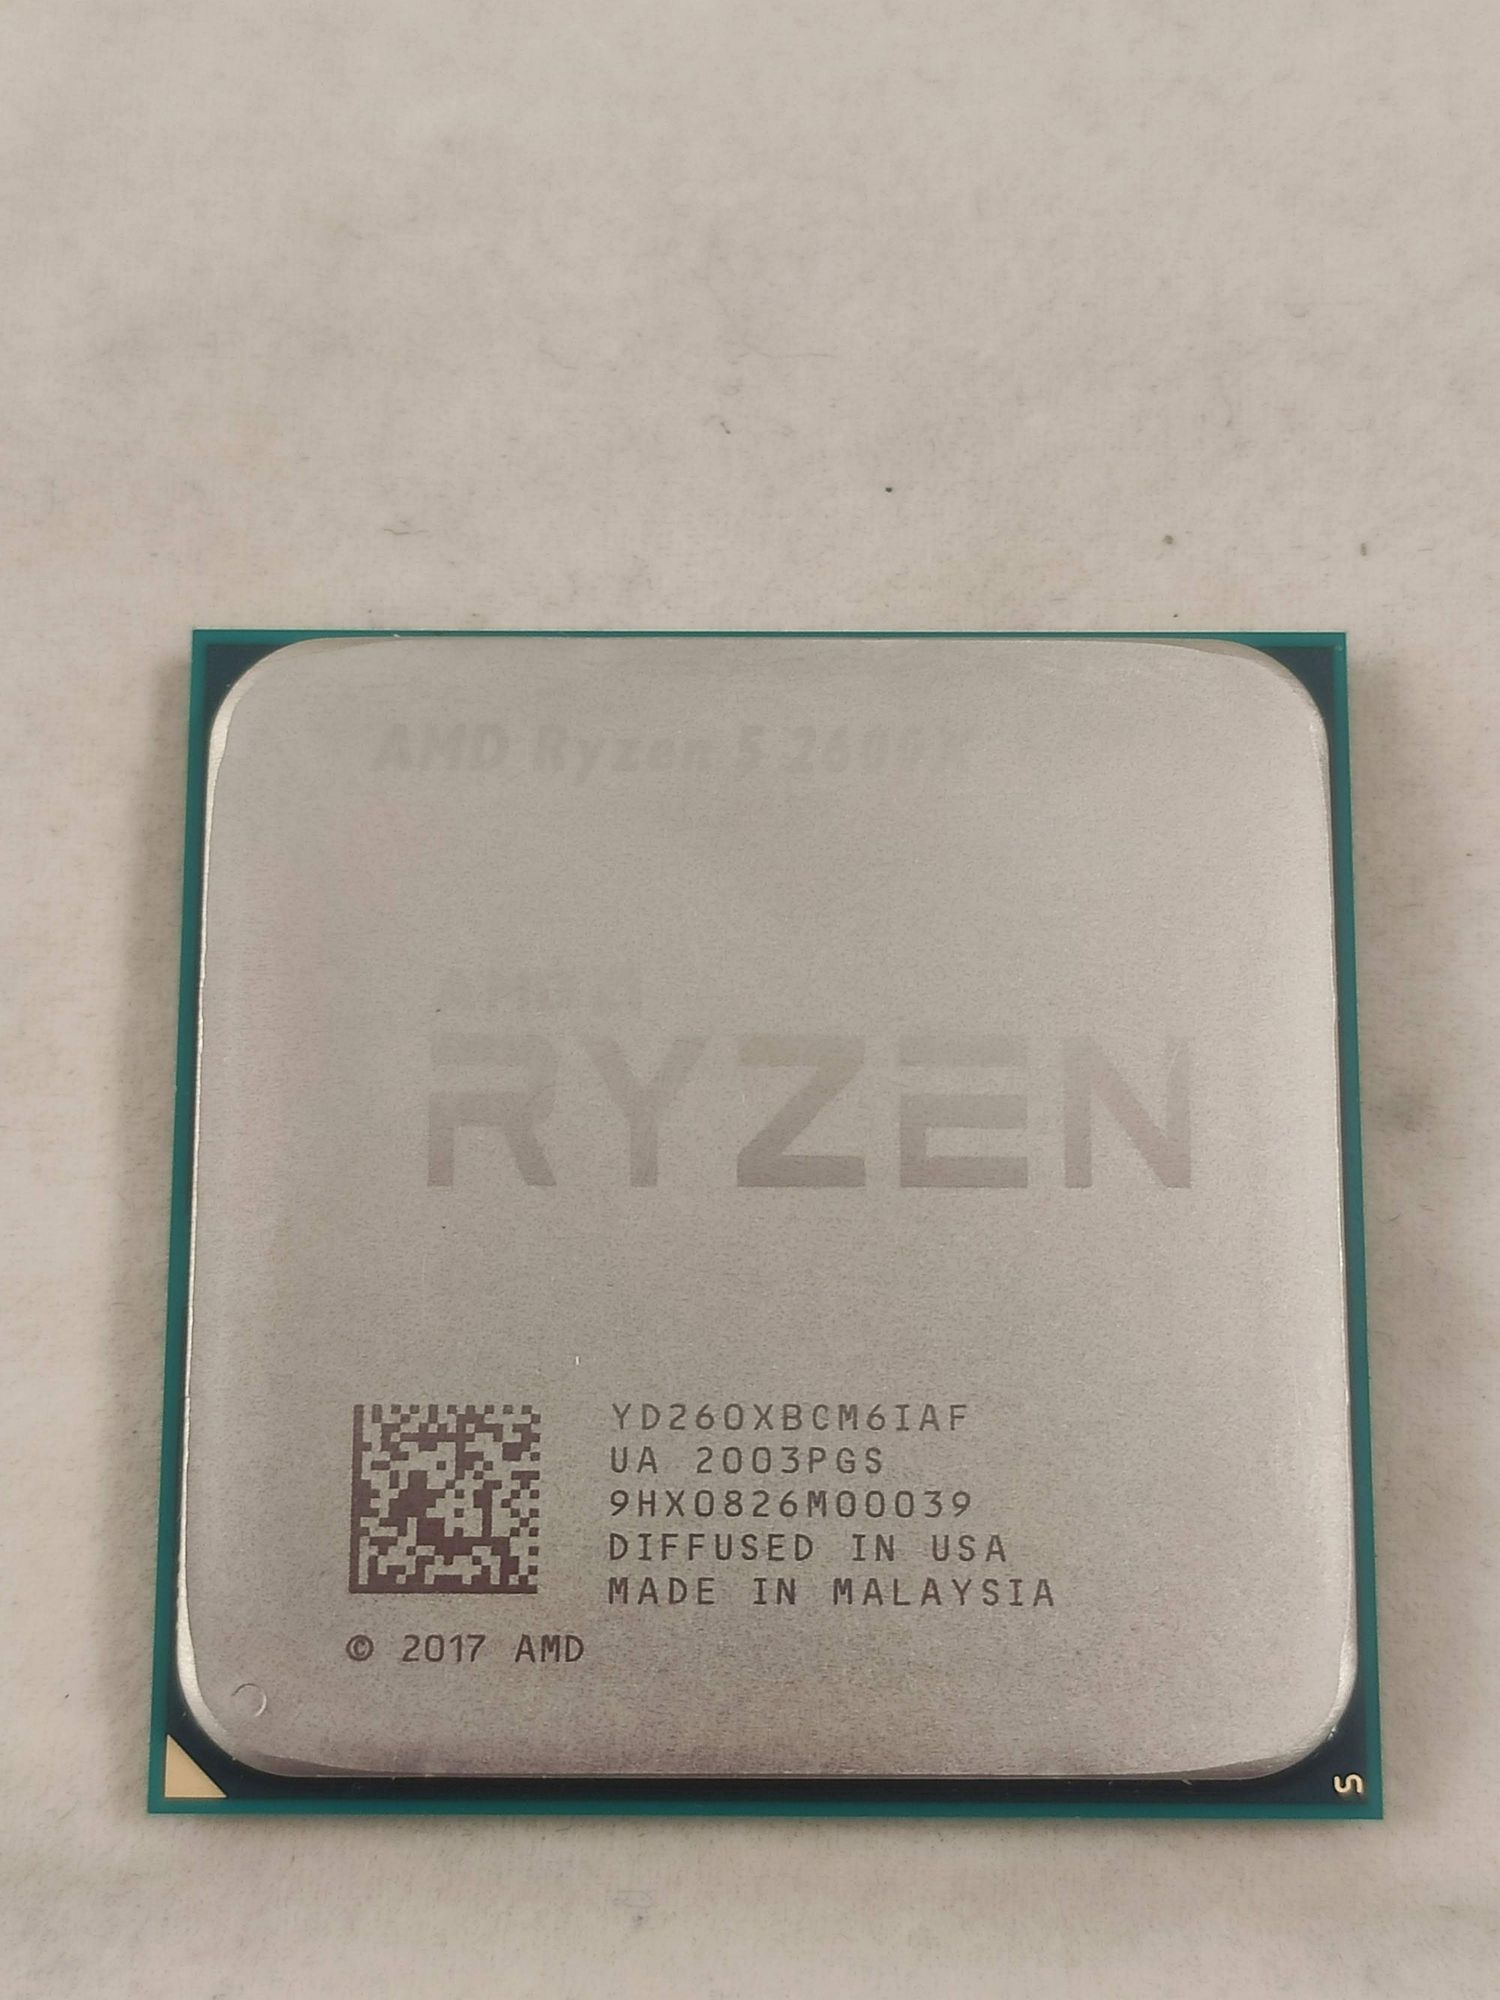 Процессор AMD Ryzen 5 2600X AM4 OEM (YD260XBCM6IAF) уцененный (гарантия 14 дней) - фото 2